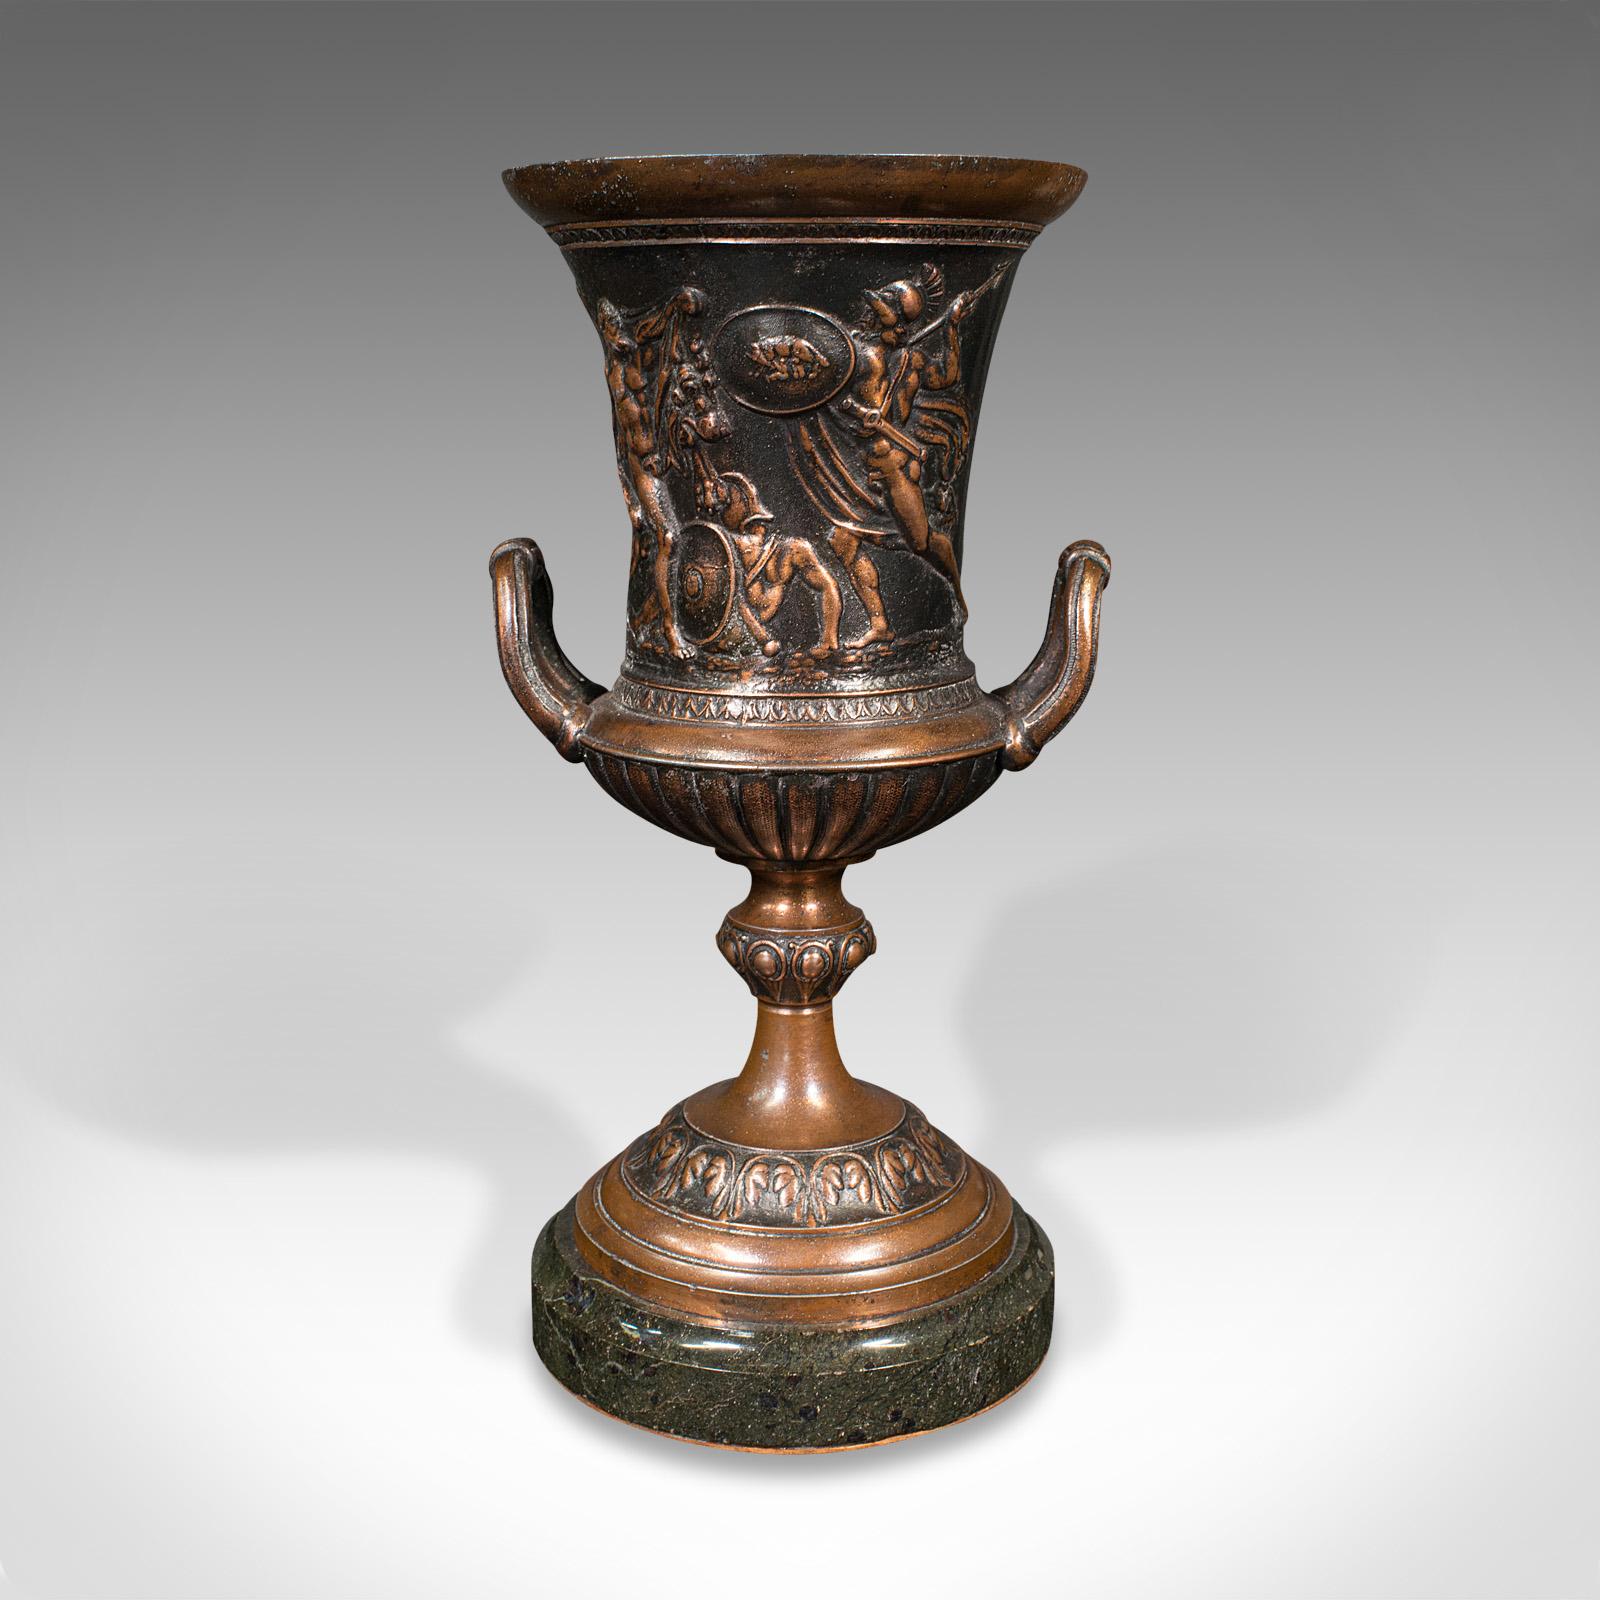 British Pair, Antique Grand Tour Urns, Italian, Decorative Vase, Roman Taste, Victorian For Sale